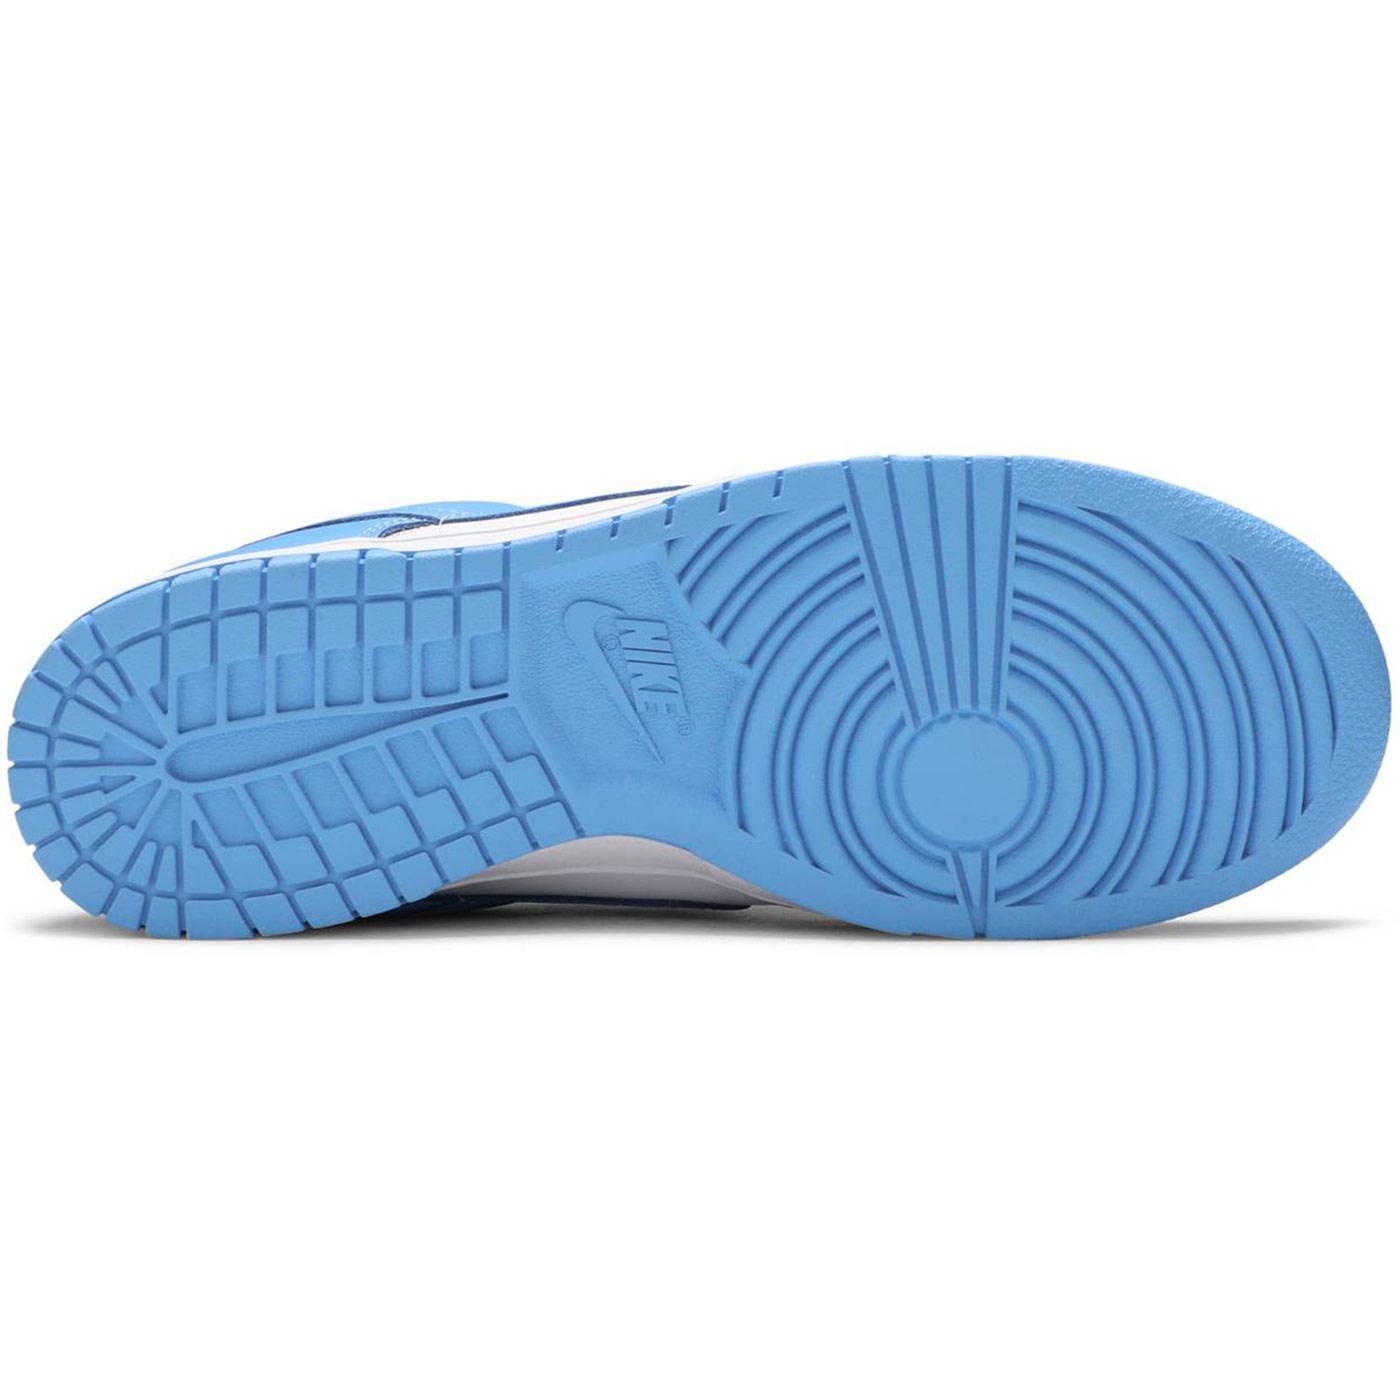 Dunk Low 'University Blue' DD1391 102 | Nike – Urban Street Wear